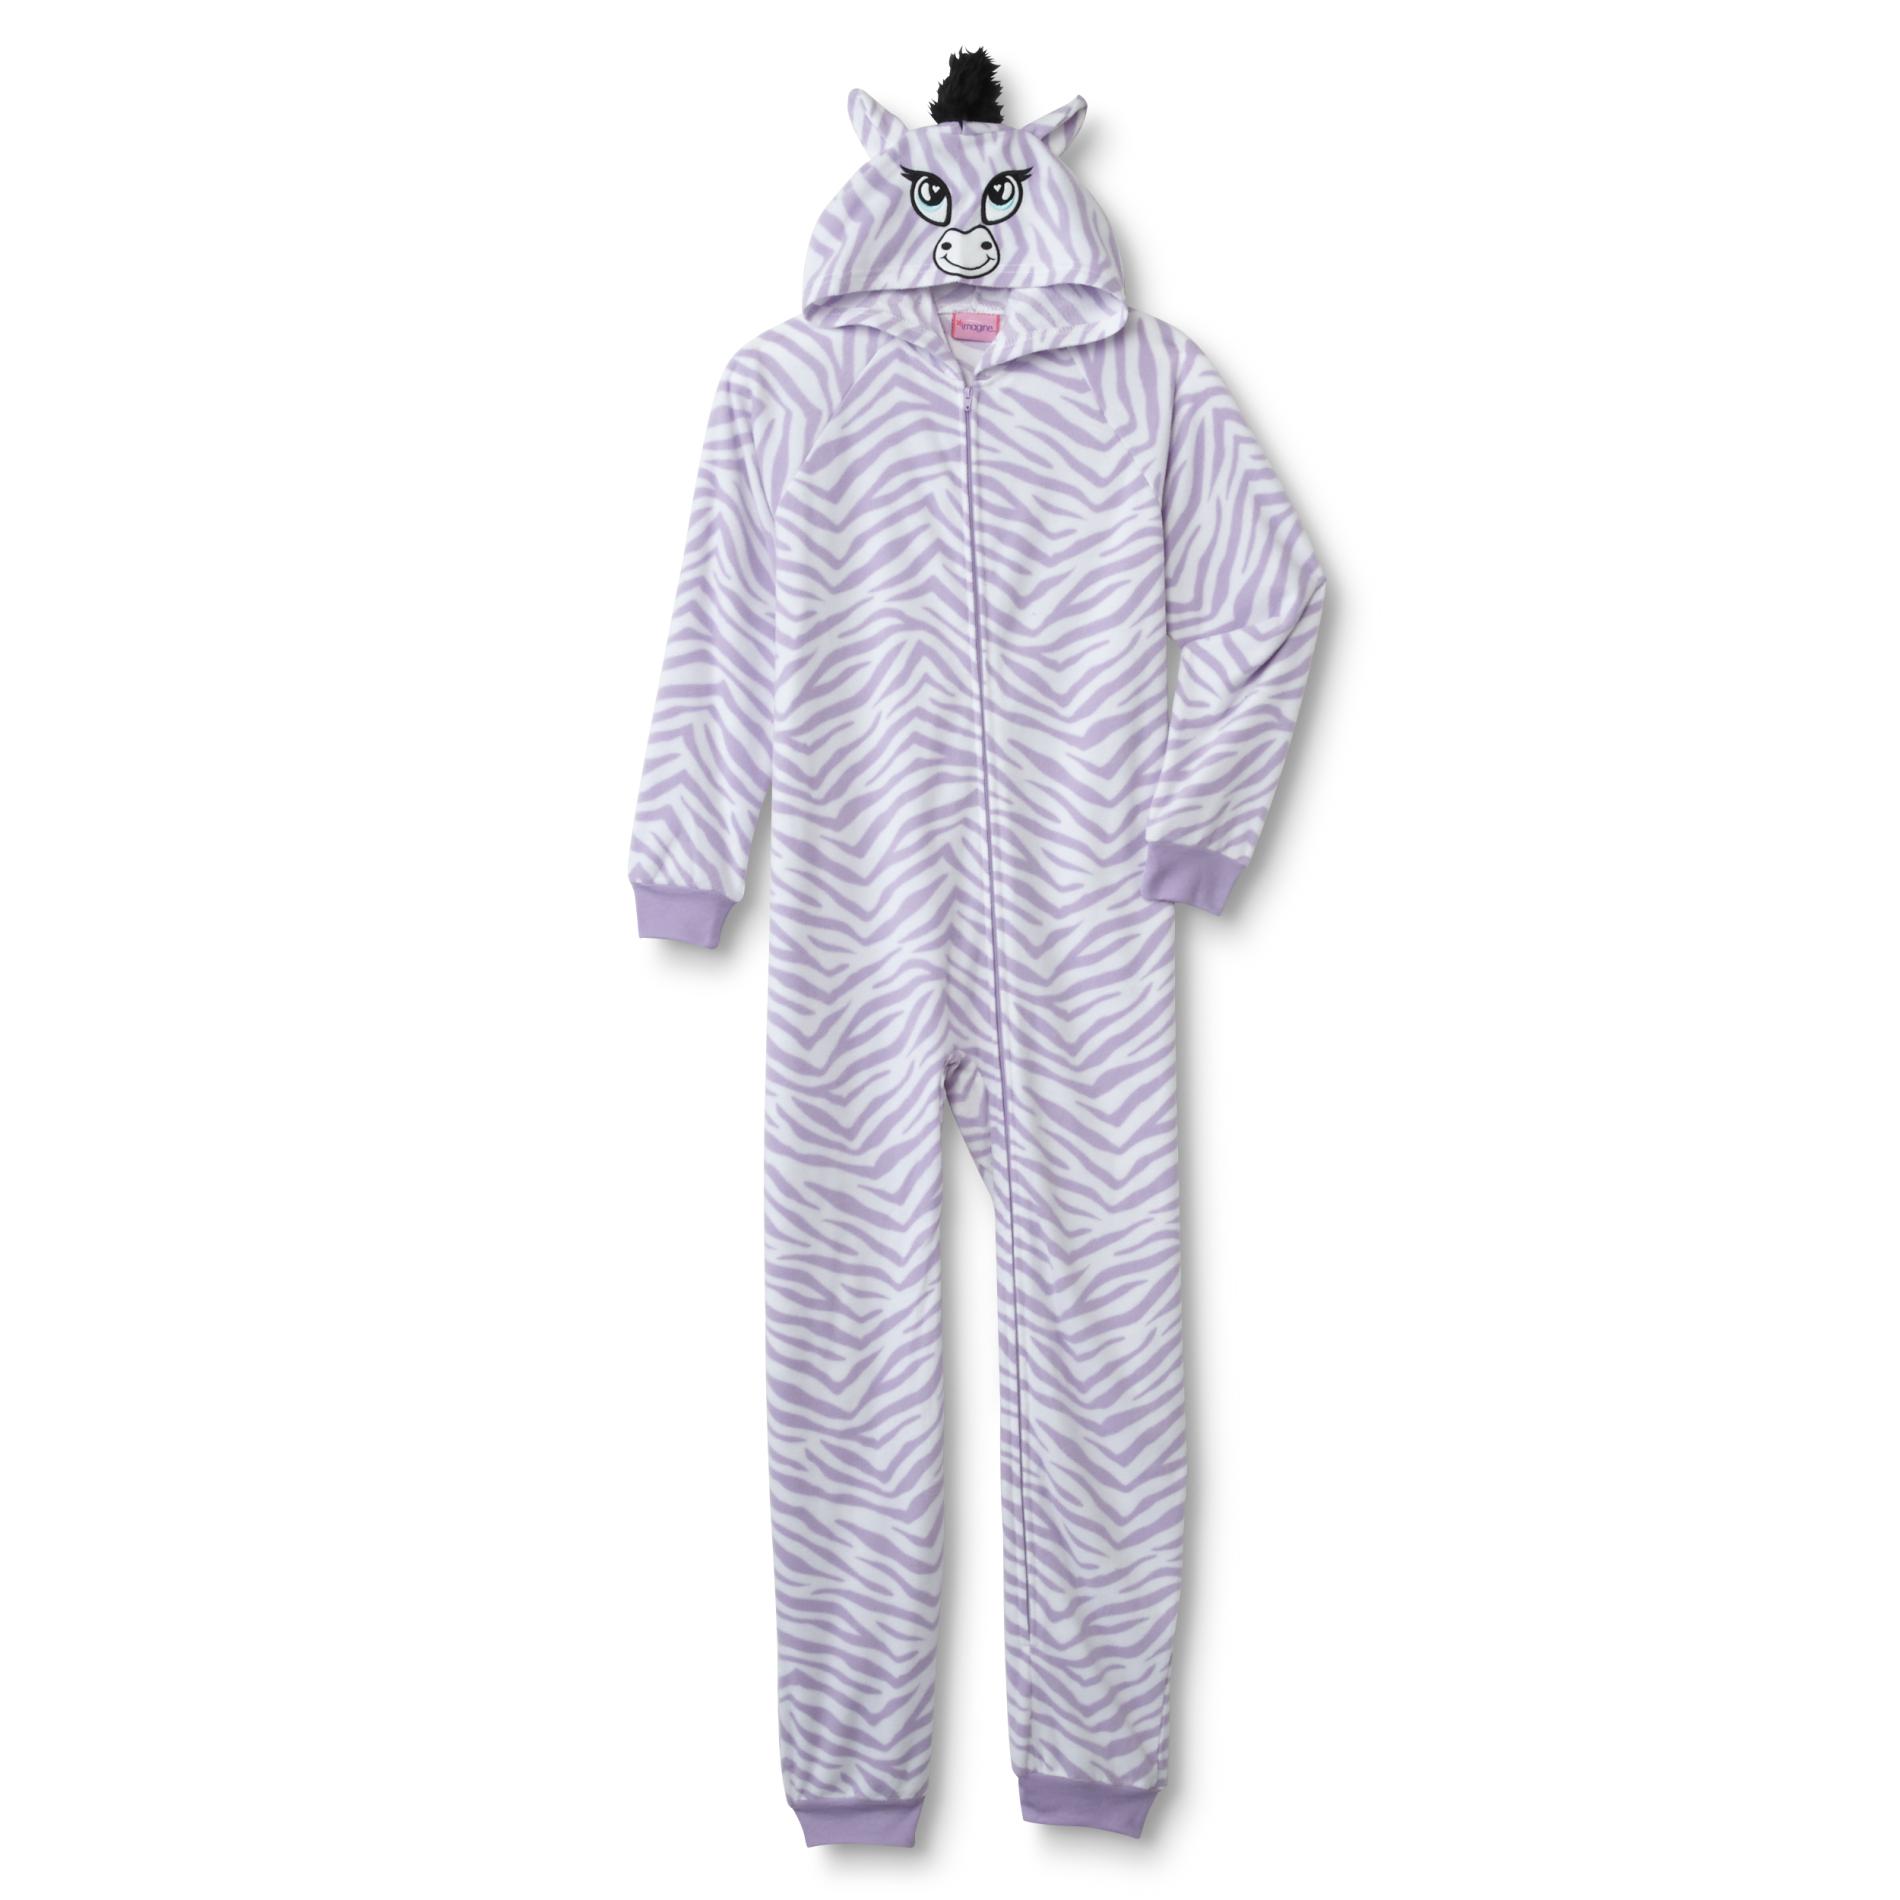 Joe Boxer Girls' Hooded Fleece Sleeper Pajamas - Zebra Print